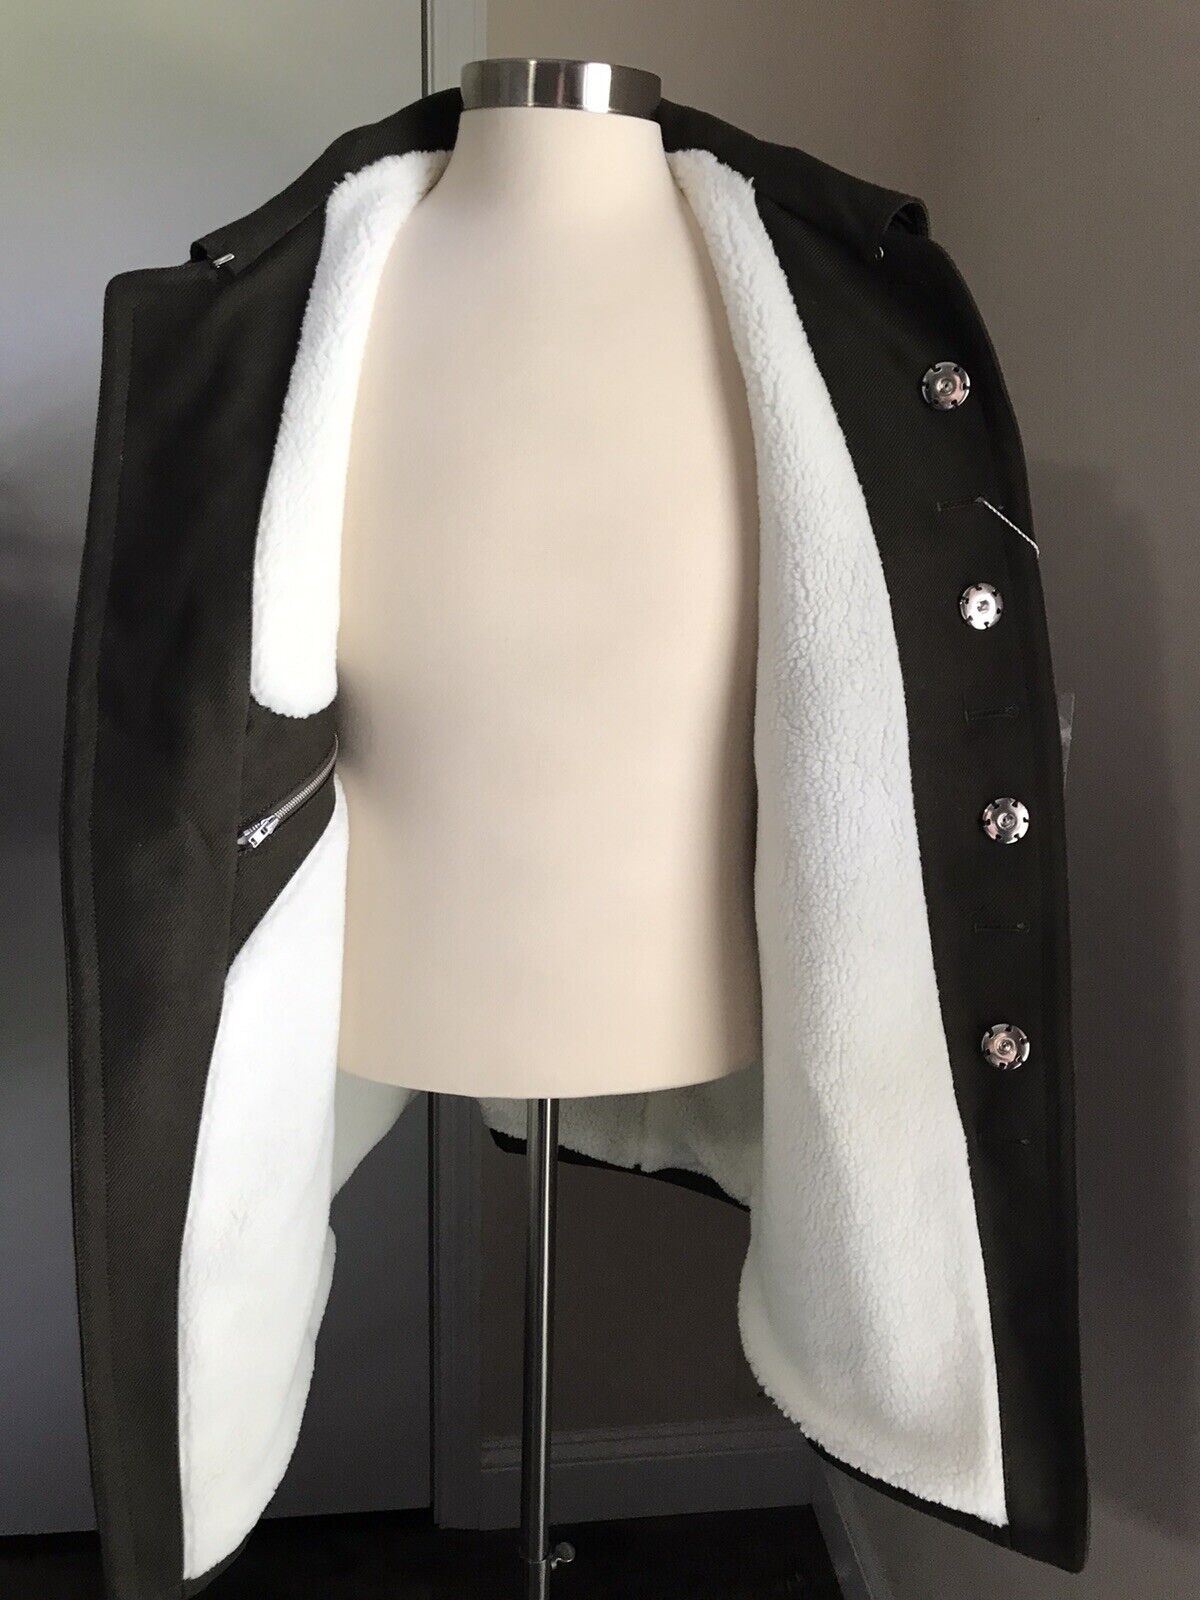 Новая куртка на подкладке из искусственного меха Maison Margiela Kaban, $2790, оливково-зеленый цвет 38/48 Ita